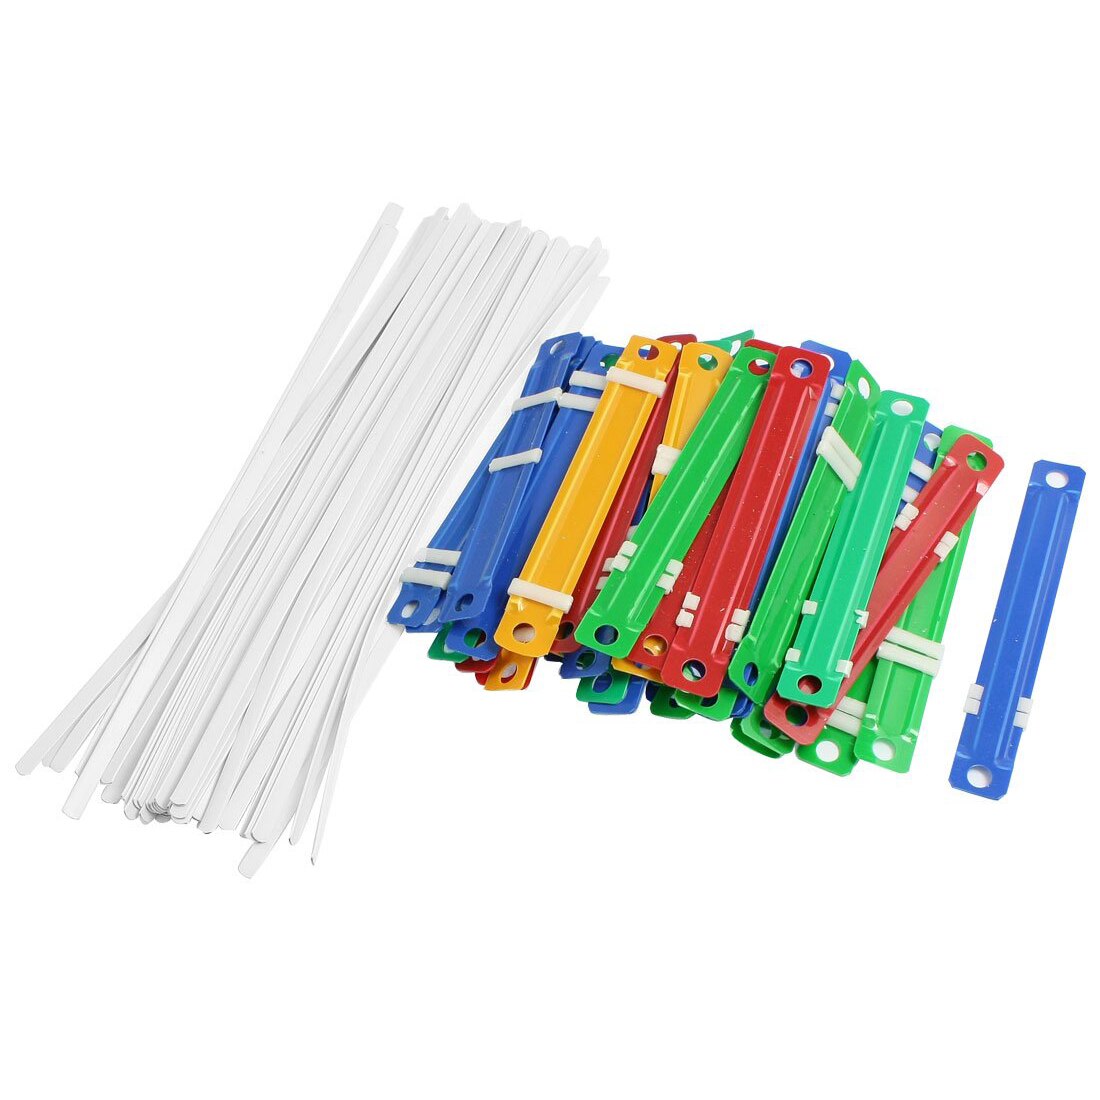 5 STUKS van 50 Stuks Office School Kleurrijke Plastic Binding Tweedelige Document Papier Bevestigingsmiddelen